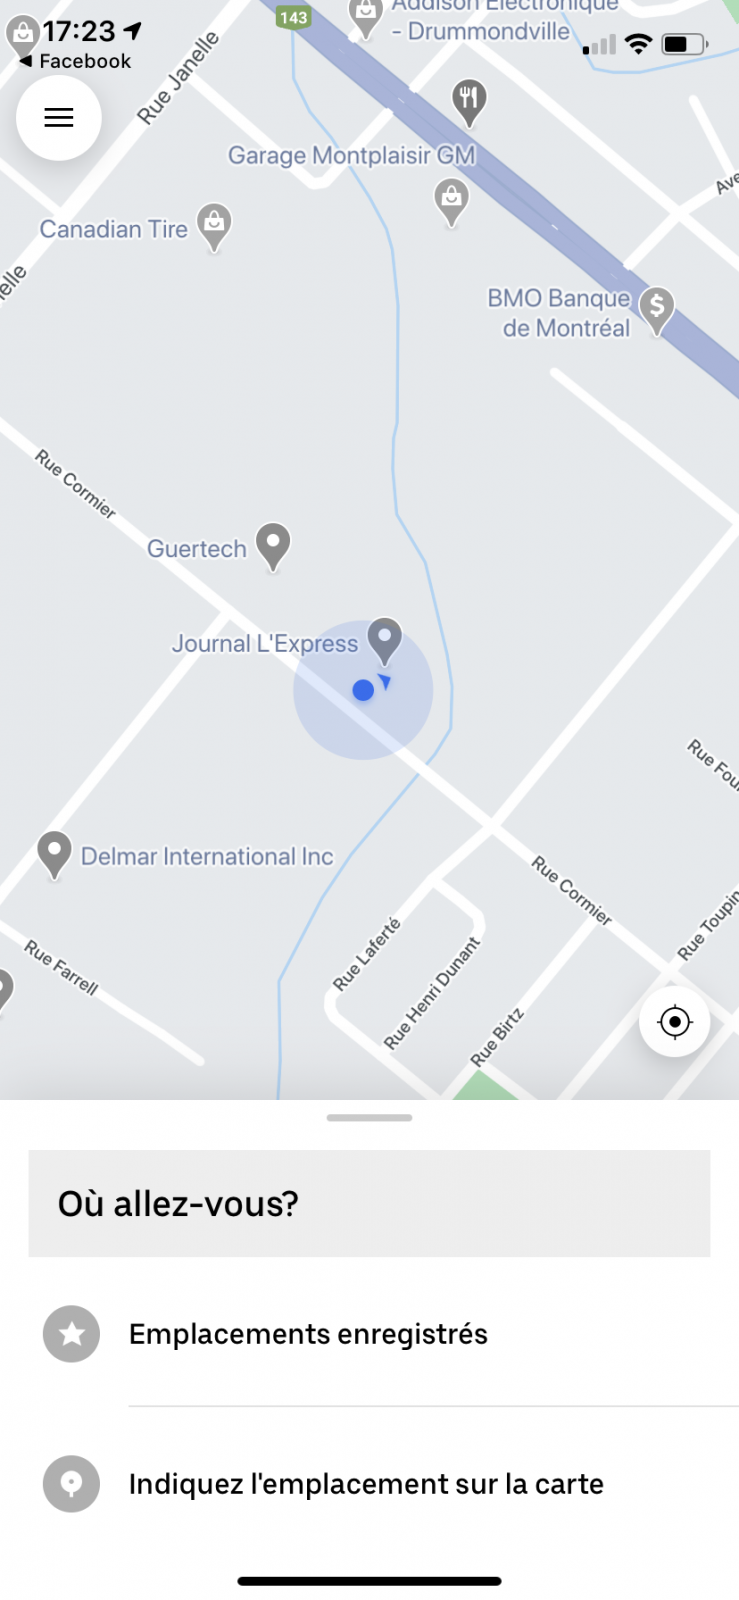 Vers un service Uber à Drummondville cet automne?